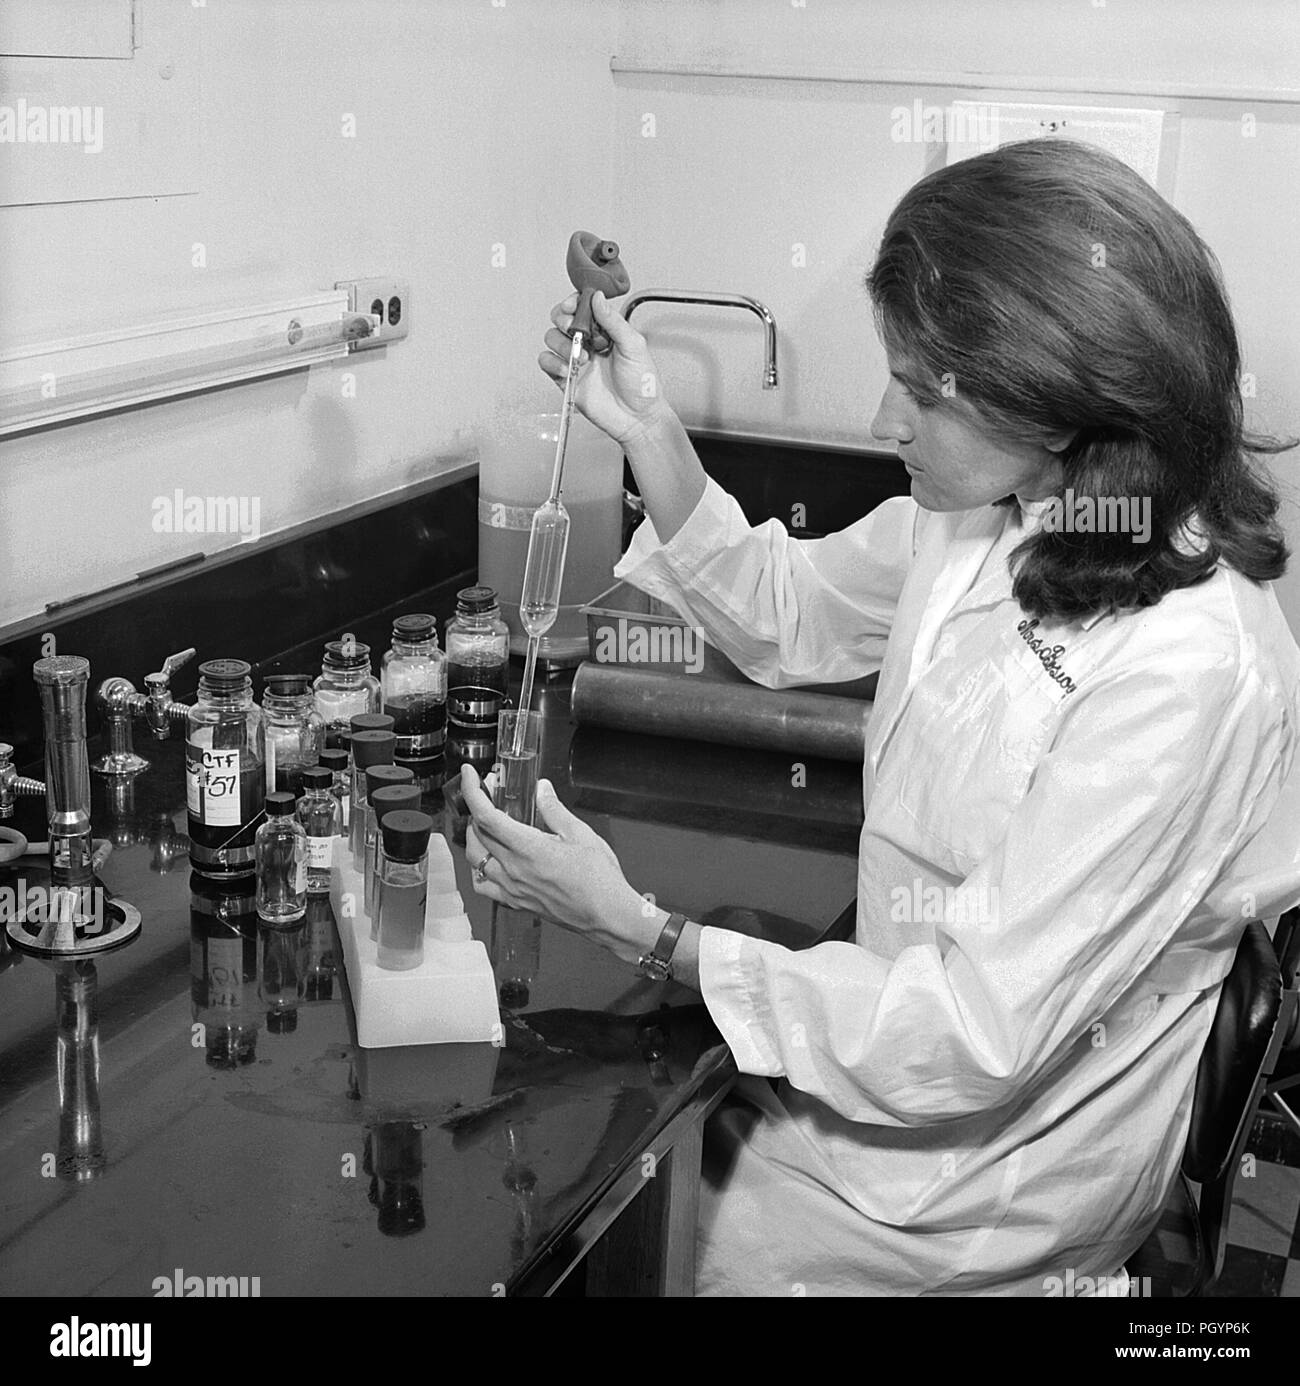 Schwarz-weiß Foto eines weiblichen Labortechniker, trägt einen weissen Mantel während der Verarbeitung einer Charge der Immune Sera, aka Antiserum, mit Fläschchen und andere wissenschaftliche Apparat auf dem Schreibtisch vor ihr sichtbar, mit freundlicher CDC / Dr. Andreas Fodor, 1967. () Stockfoto